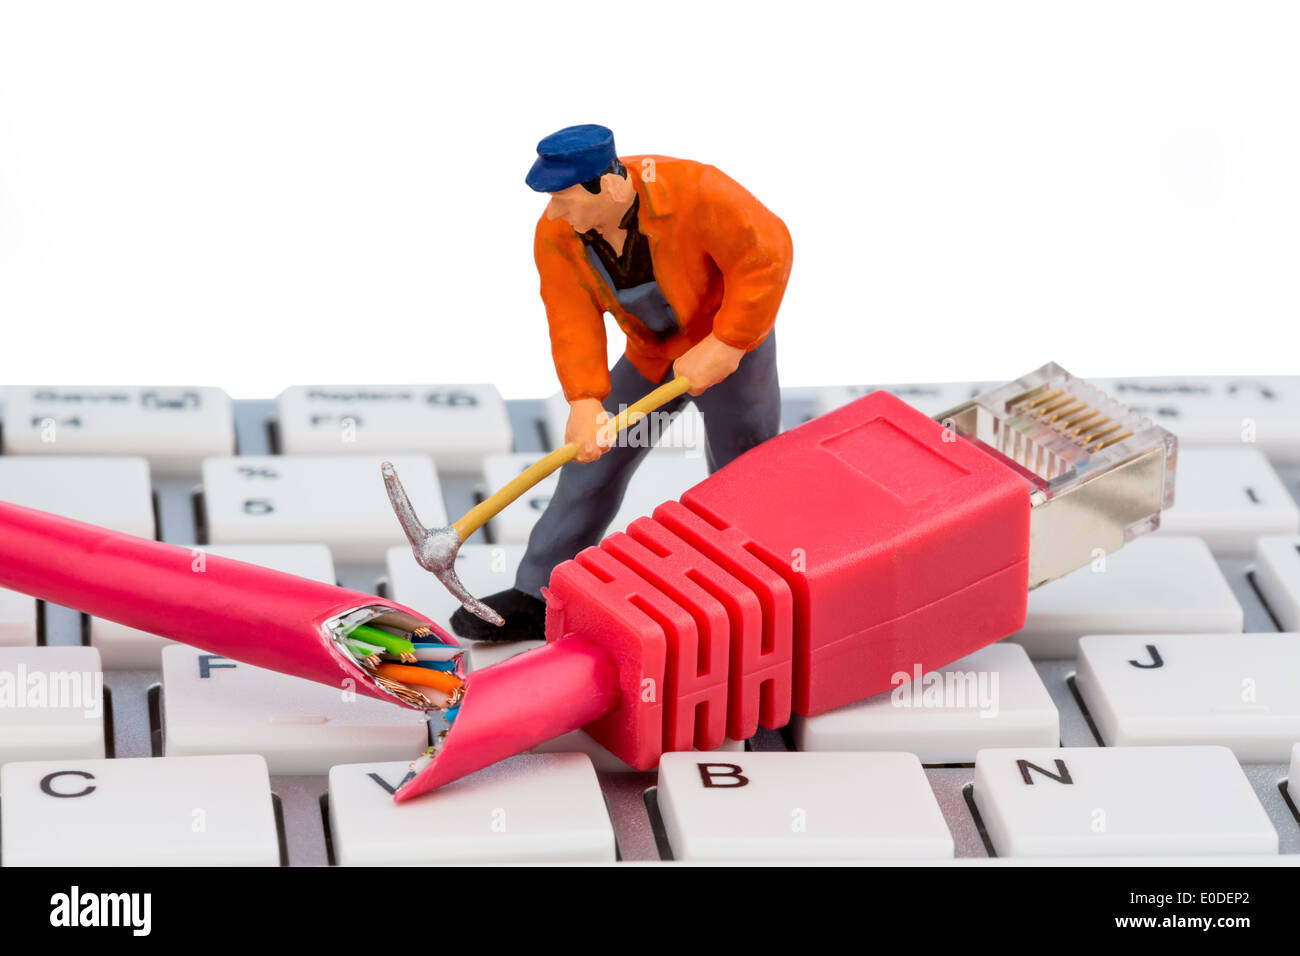 A worker repairs a network cable. Symbolic photo for data security, Ein Arbeiter repariert ein Netzwerk Kabel. Symbolfoto fuer D Stock Photo